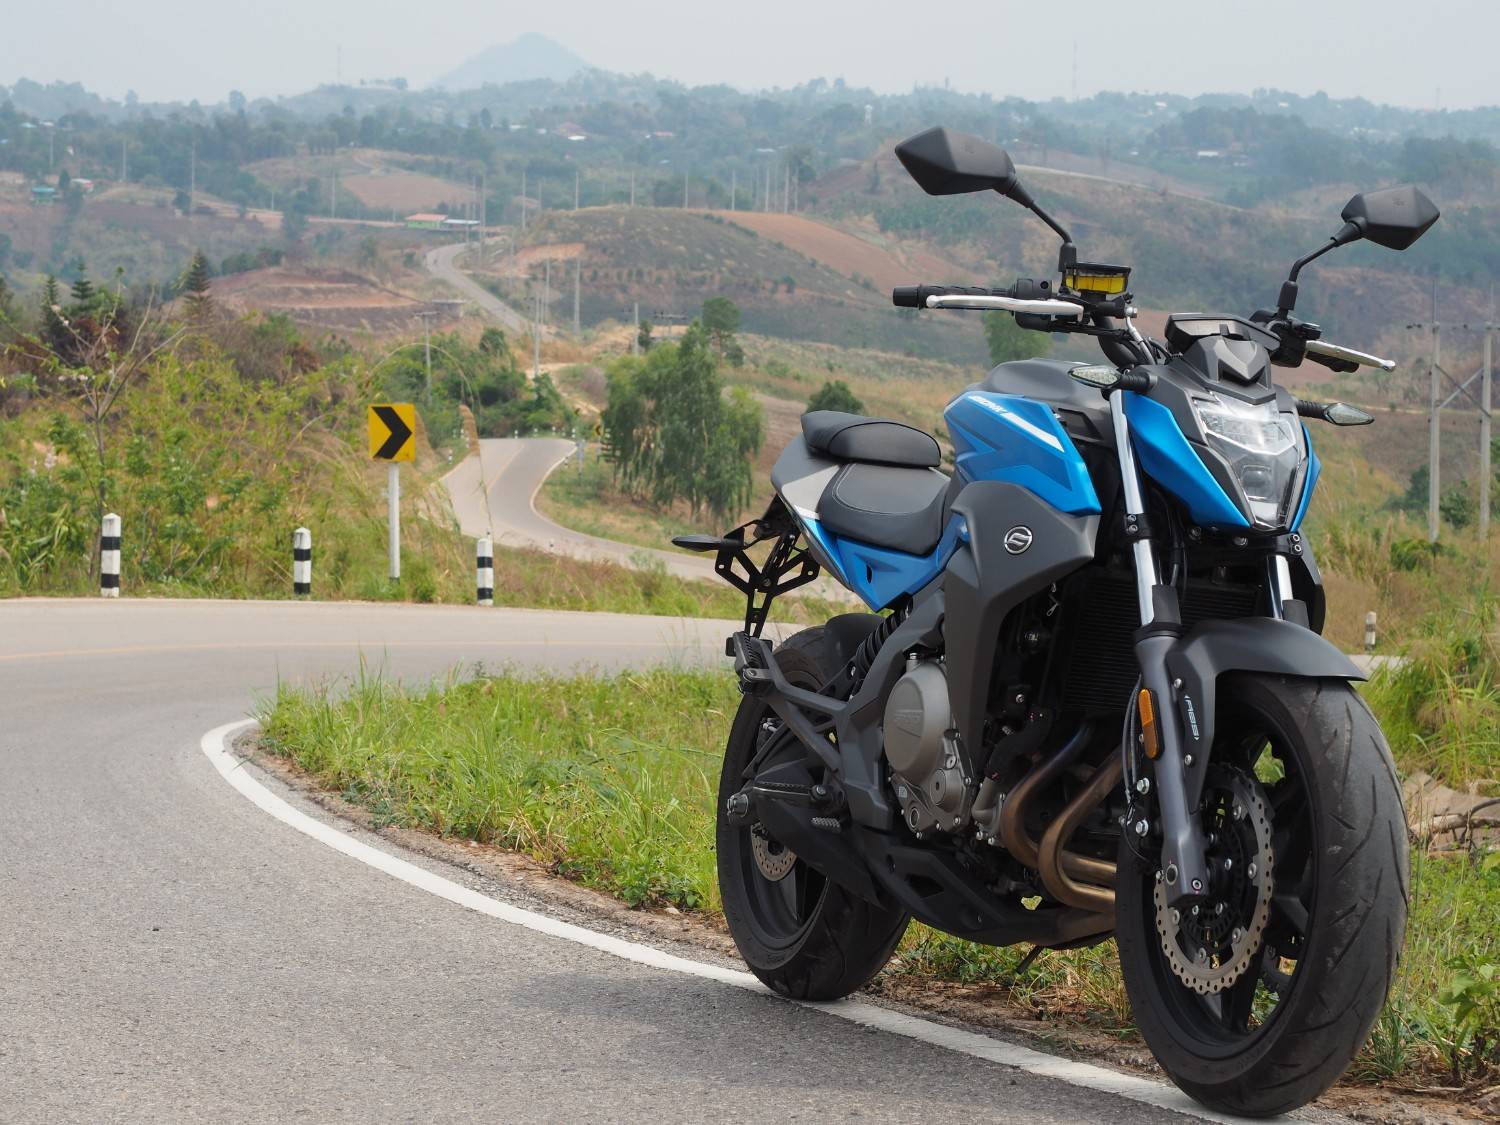 Cf moto 650 nk: обзор, отзывы и технические характеристики мотоцикла